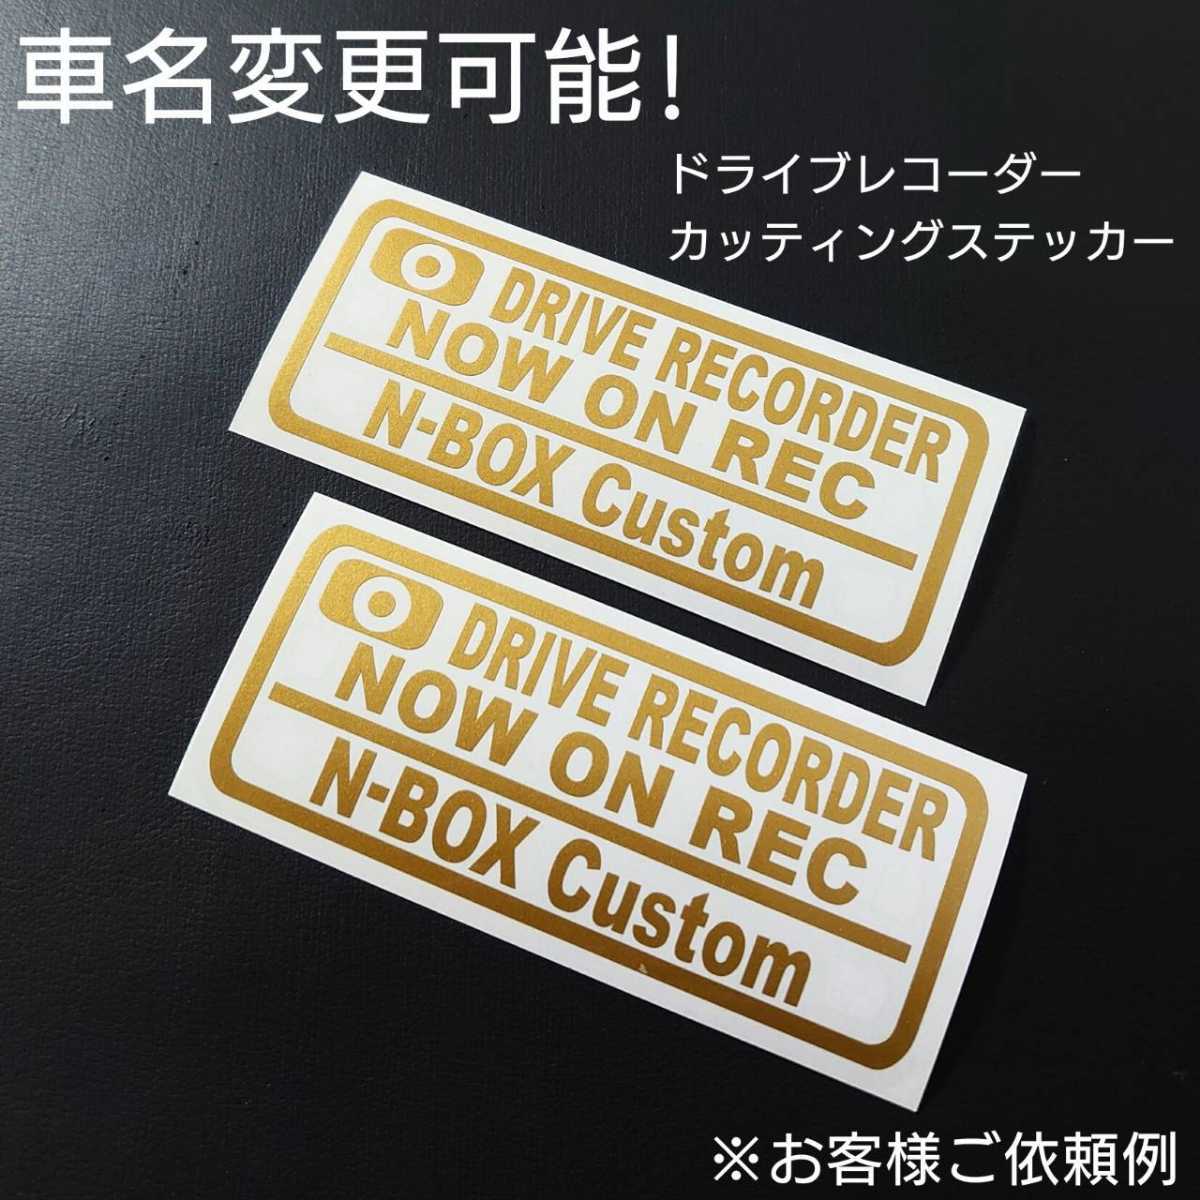 車名変更可能【ドライブレコーダー】カッティングステッカー2枚セット(N-BOX Custom)(ゴールド)_画像1